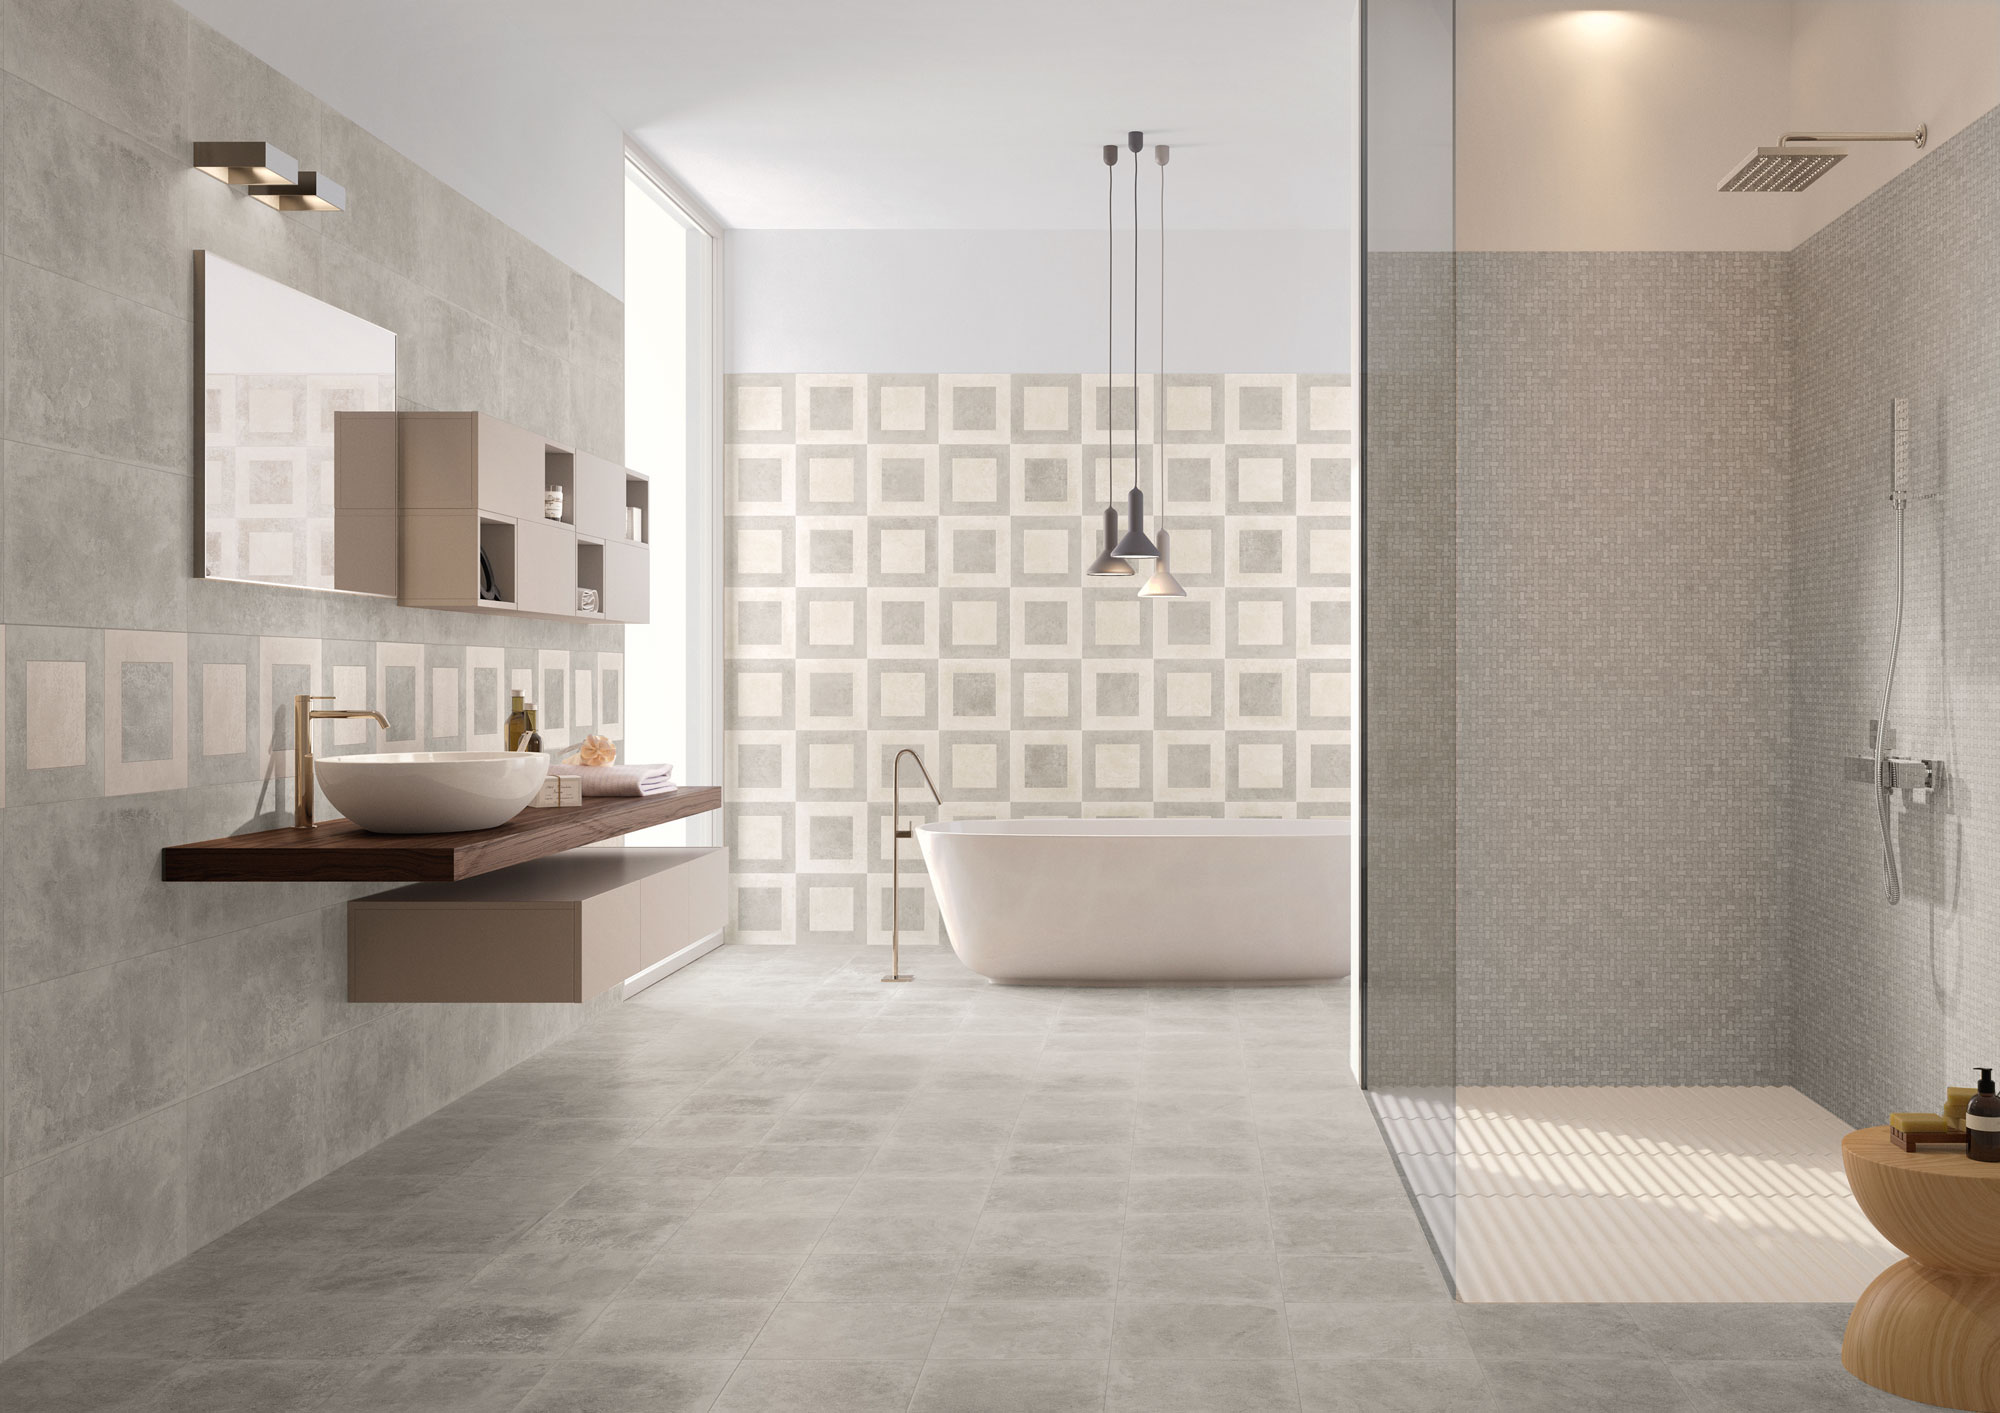 Badezimmer futuristisch: Wand mit Muster, offene Regendusche